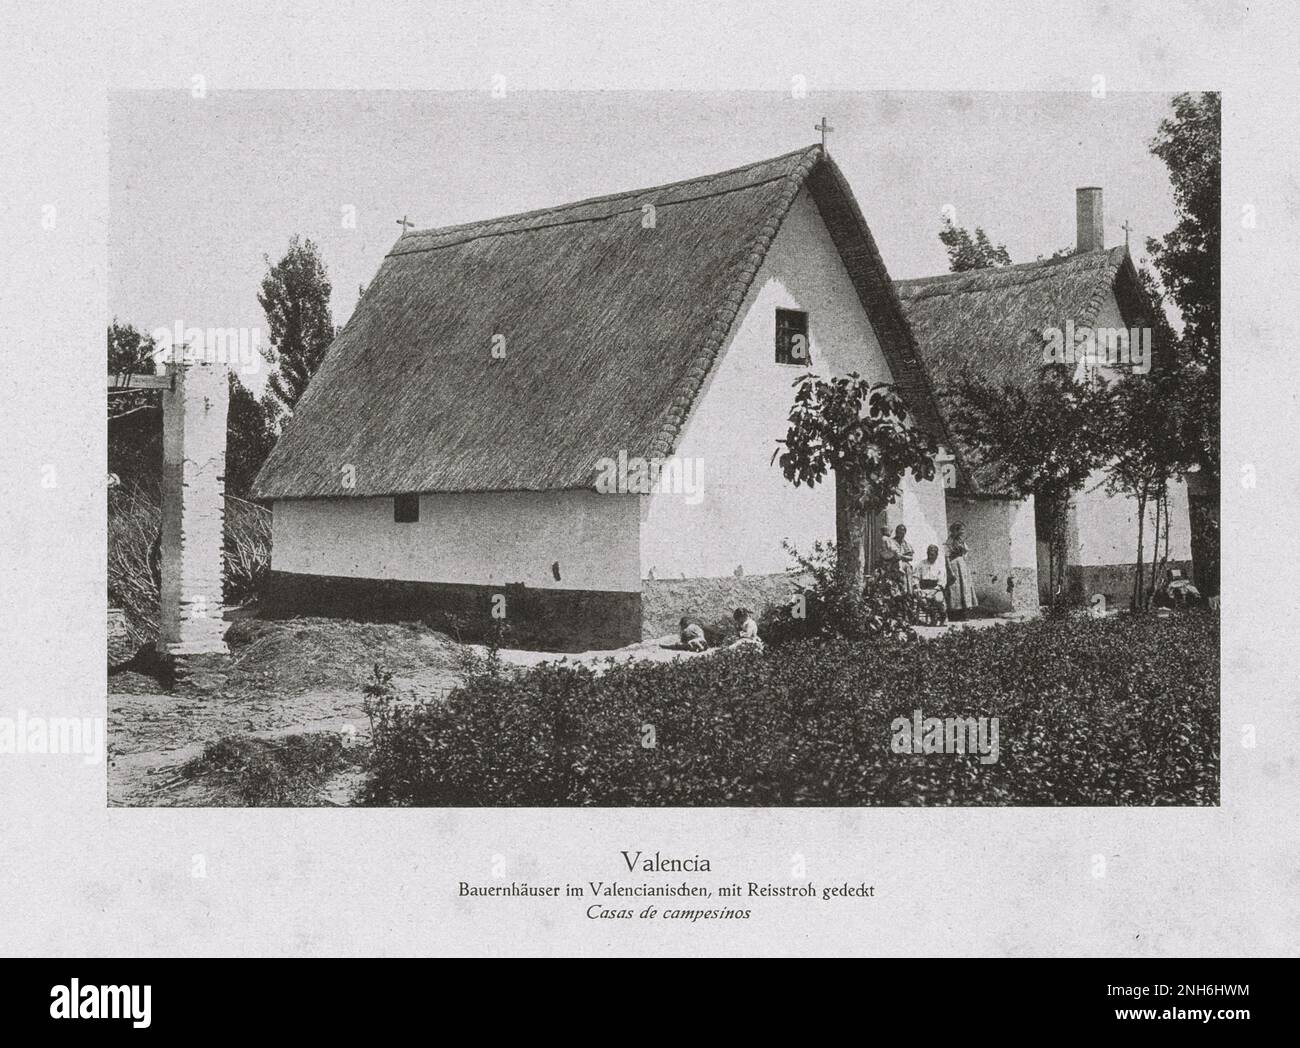 Architektur des alten Spaniens. Vintage-Foto von Bauernhäusern im valencianischen Stil mit Dächern mit Reistroh. Valencia. Spanien. Stockfoto